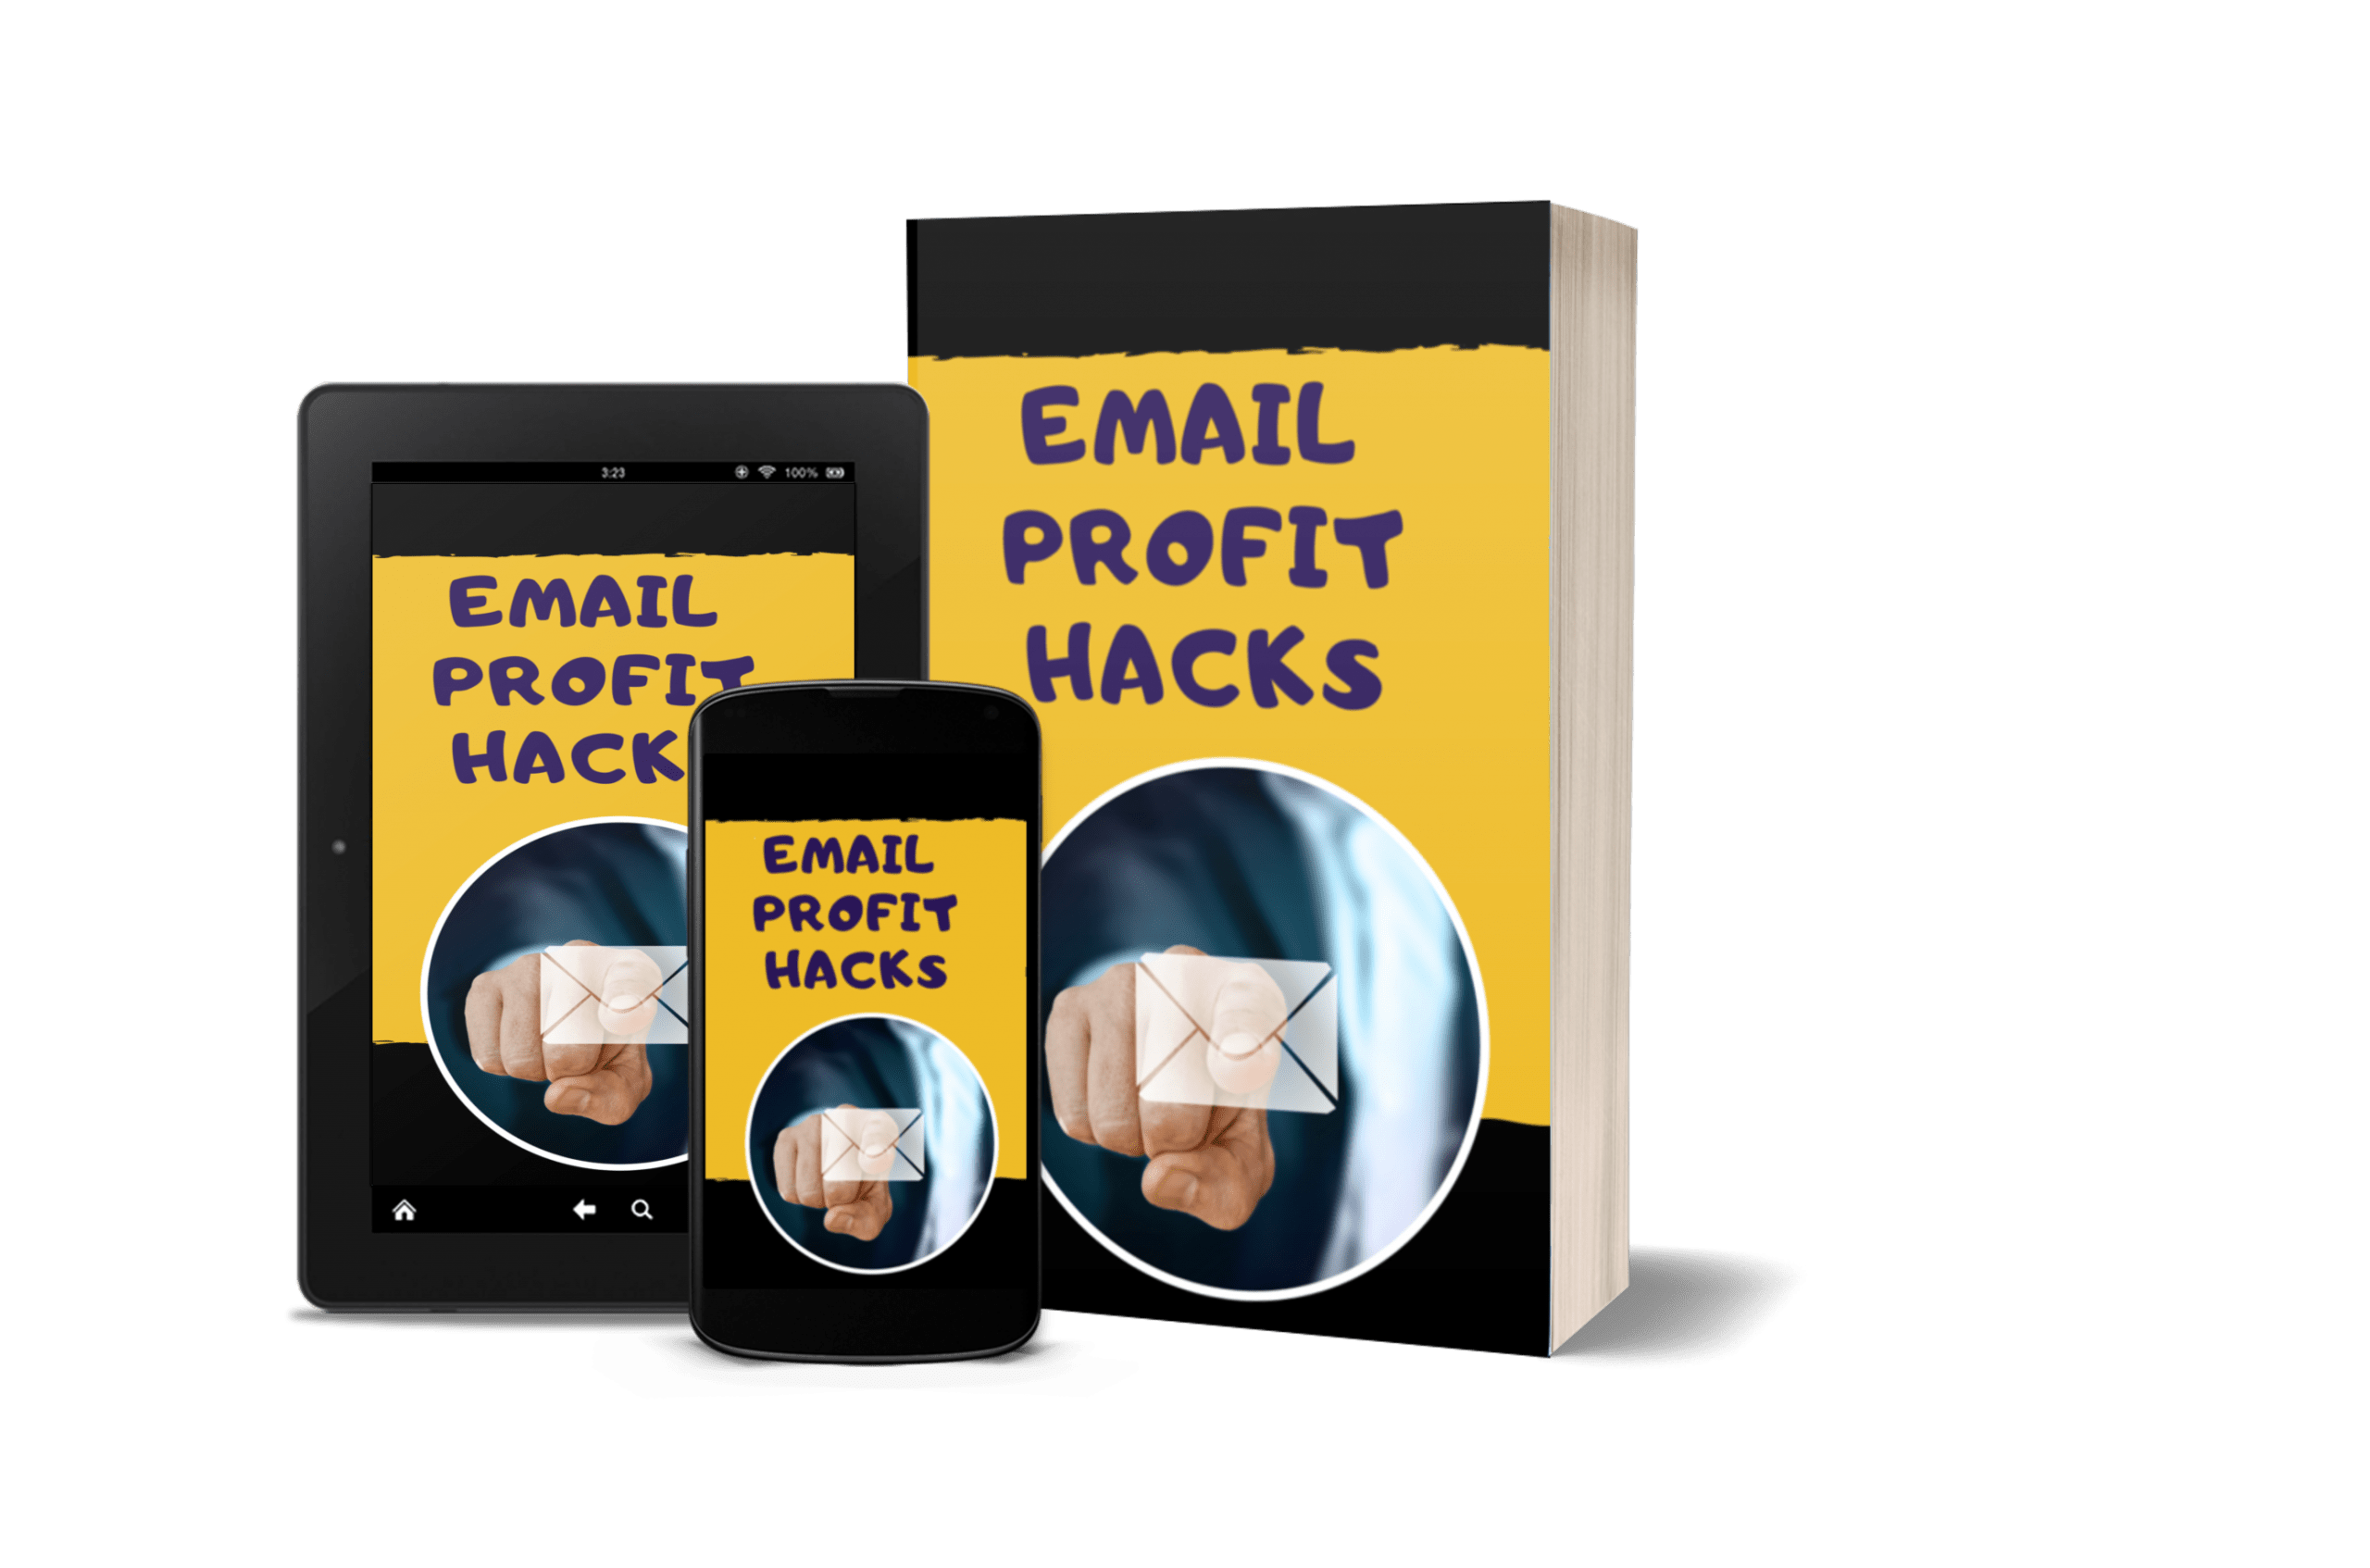 [GET] Email Profit Hacks Download